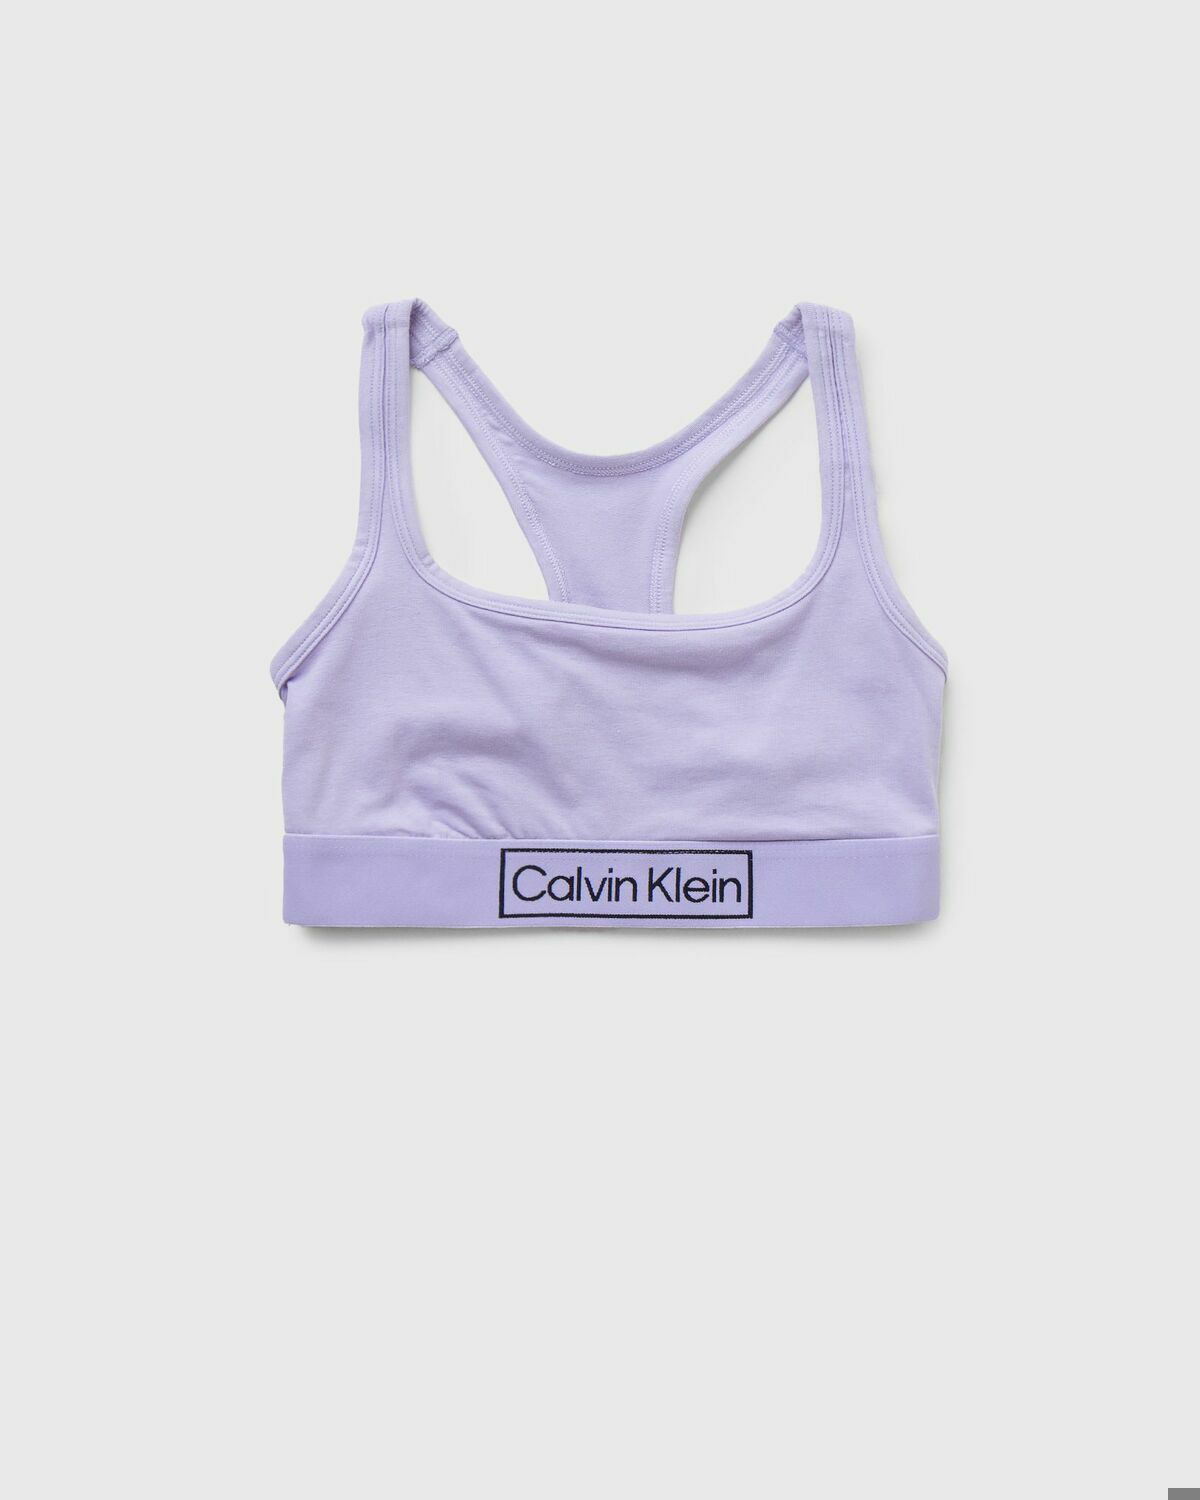 Calvin Klein Underwear Unlined Bralette Purple - Womens - (Sports ) Bras Calvin  Klein Underwear